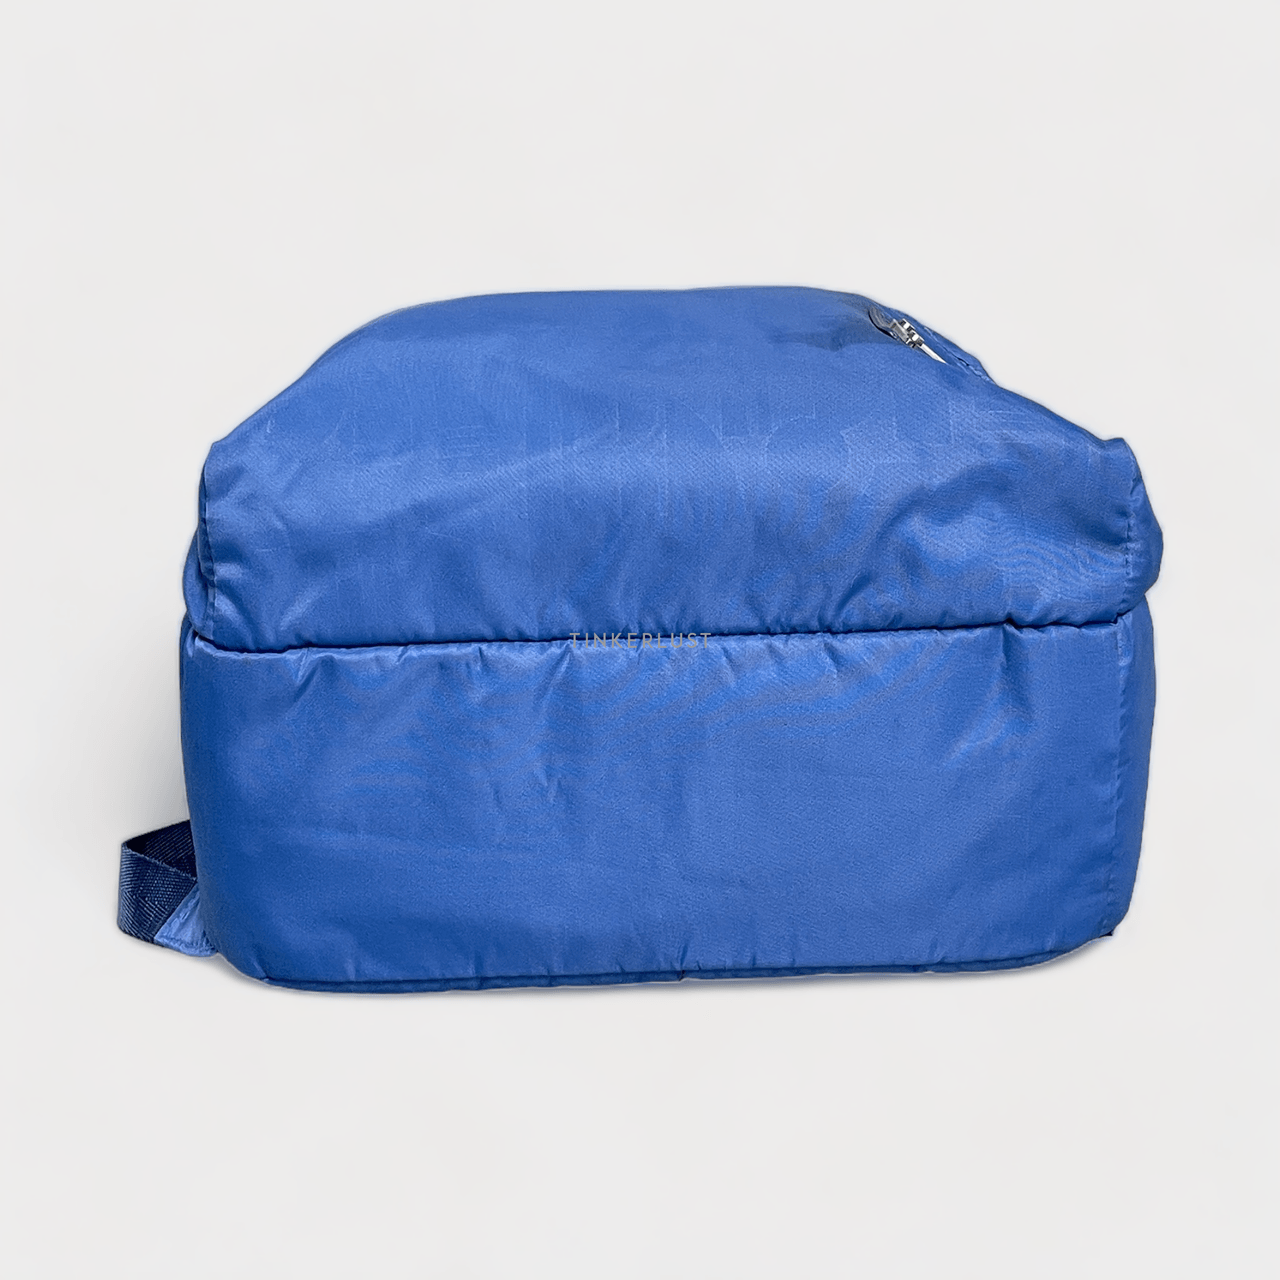 Elle Blue Backpack